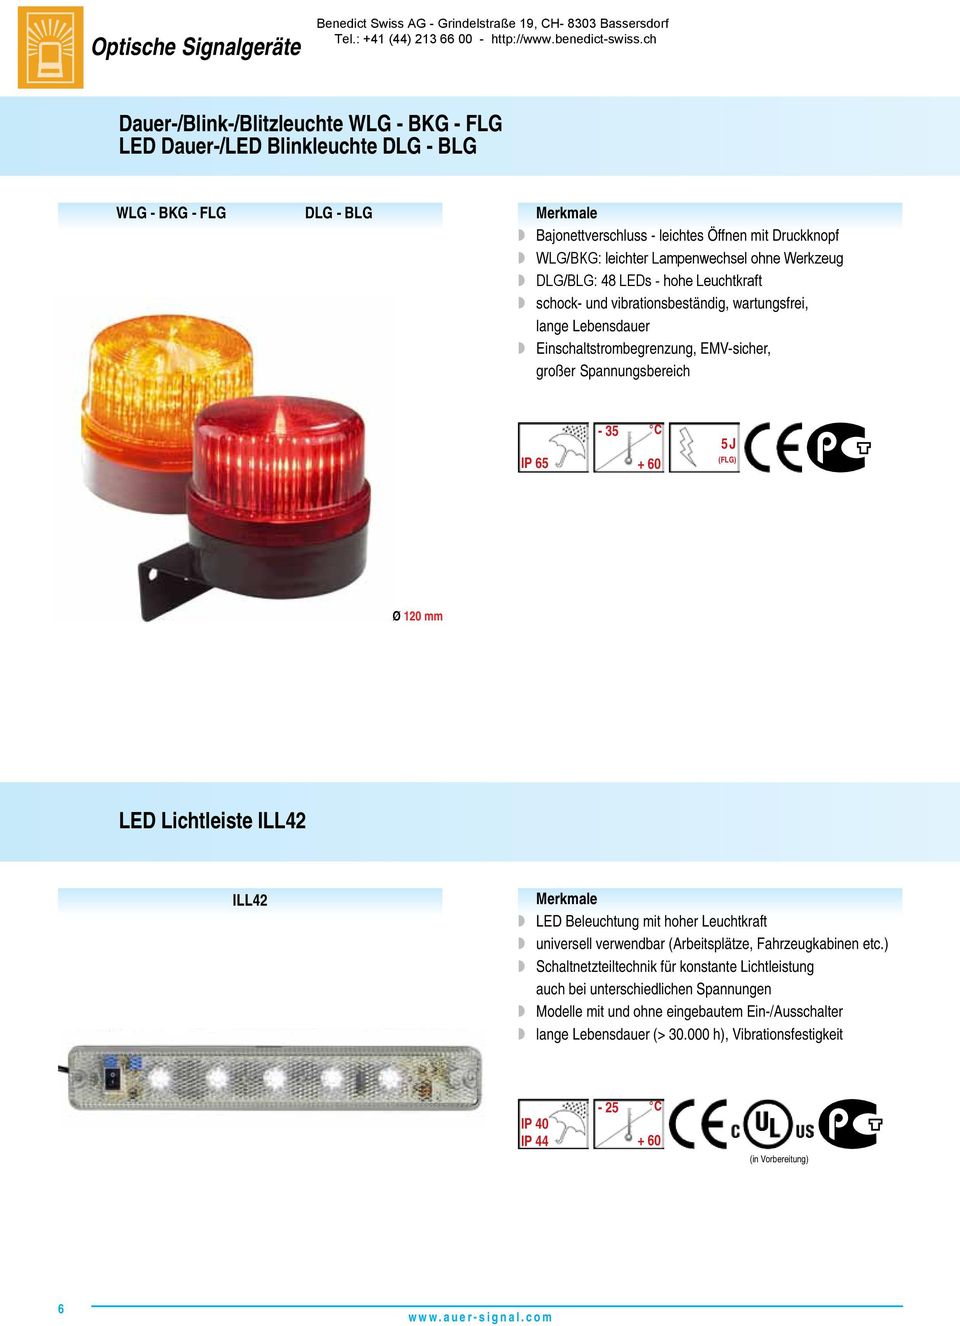 Lebensdauer w Einschaltstrombegrenzung, EMV-sicher, großer IP 65-35 + 60 5 J (FLG) Ø 120 mm LED Lichtleiste ILL42 ILL42 w LED Beleuchtung mit hoher Leuchtkraft w universell verwendbar (Arbeitsplätze,